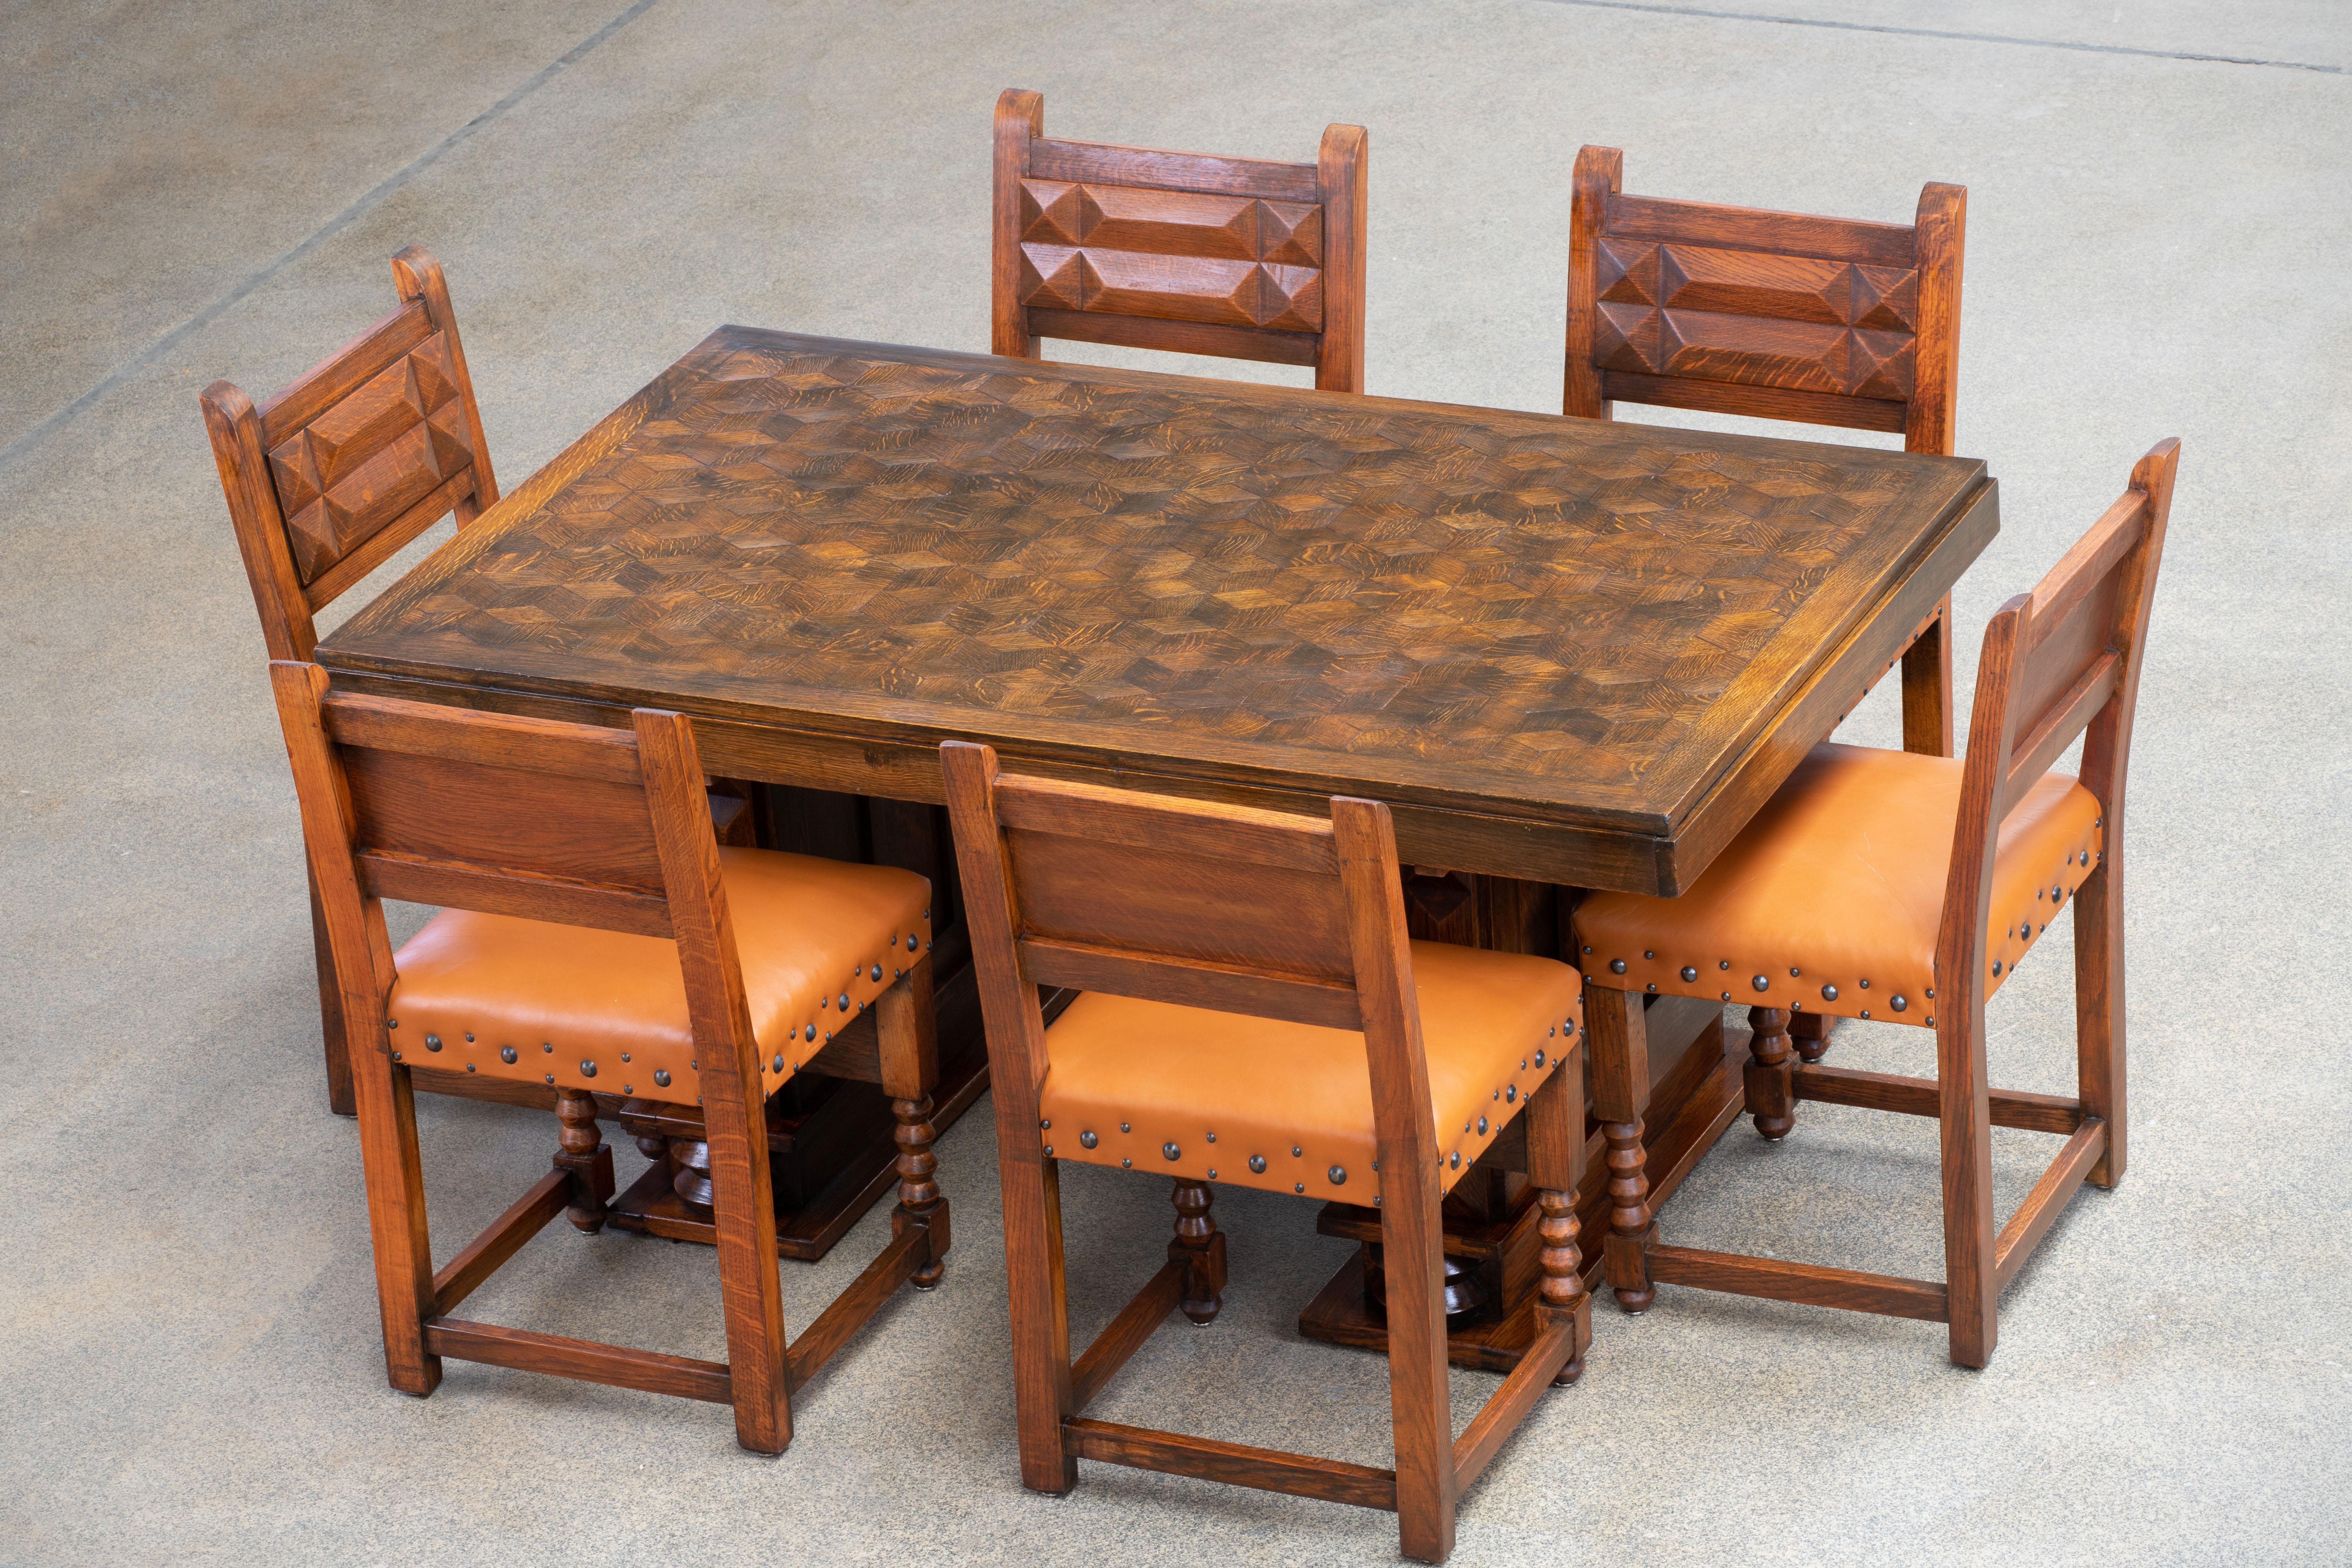 Französischer Art Deco Esstisch. Der Tisch besteht aus wunderschönem Eichenholz mit einer herrlichen Patina. Die Platte ist mit einer oktogonalen Intarsie verziert. 
Er ruht auf hohen, brutalistisch verjüngten Beinen.
Der Tisch befindet sich in